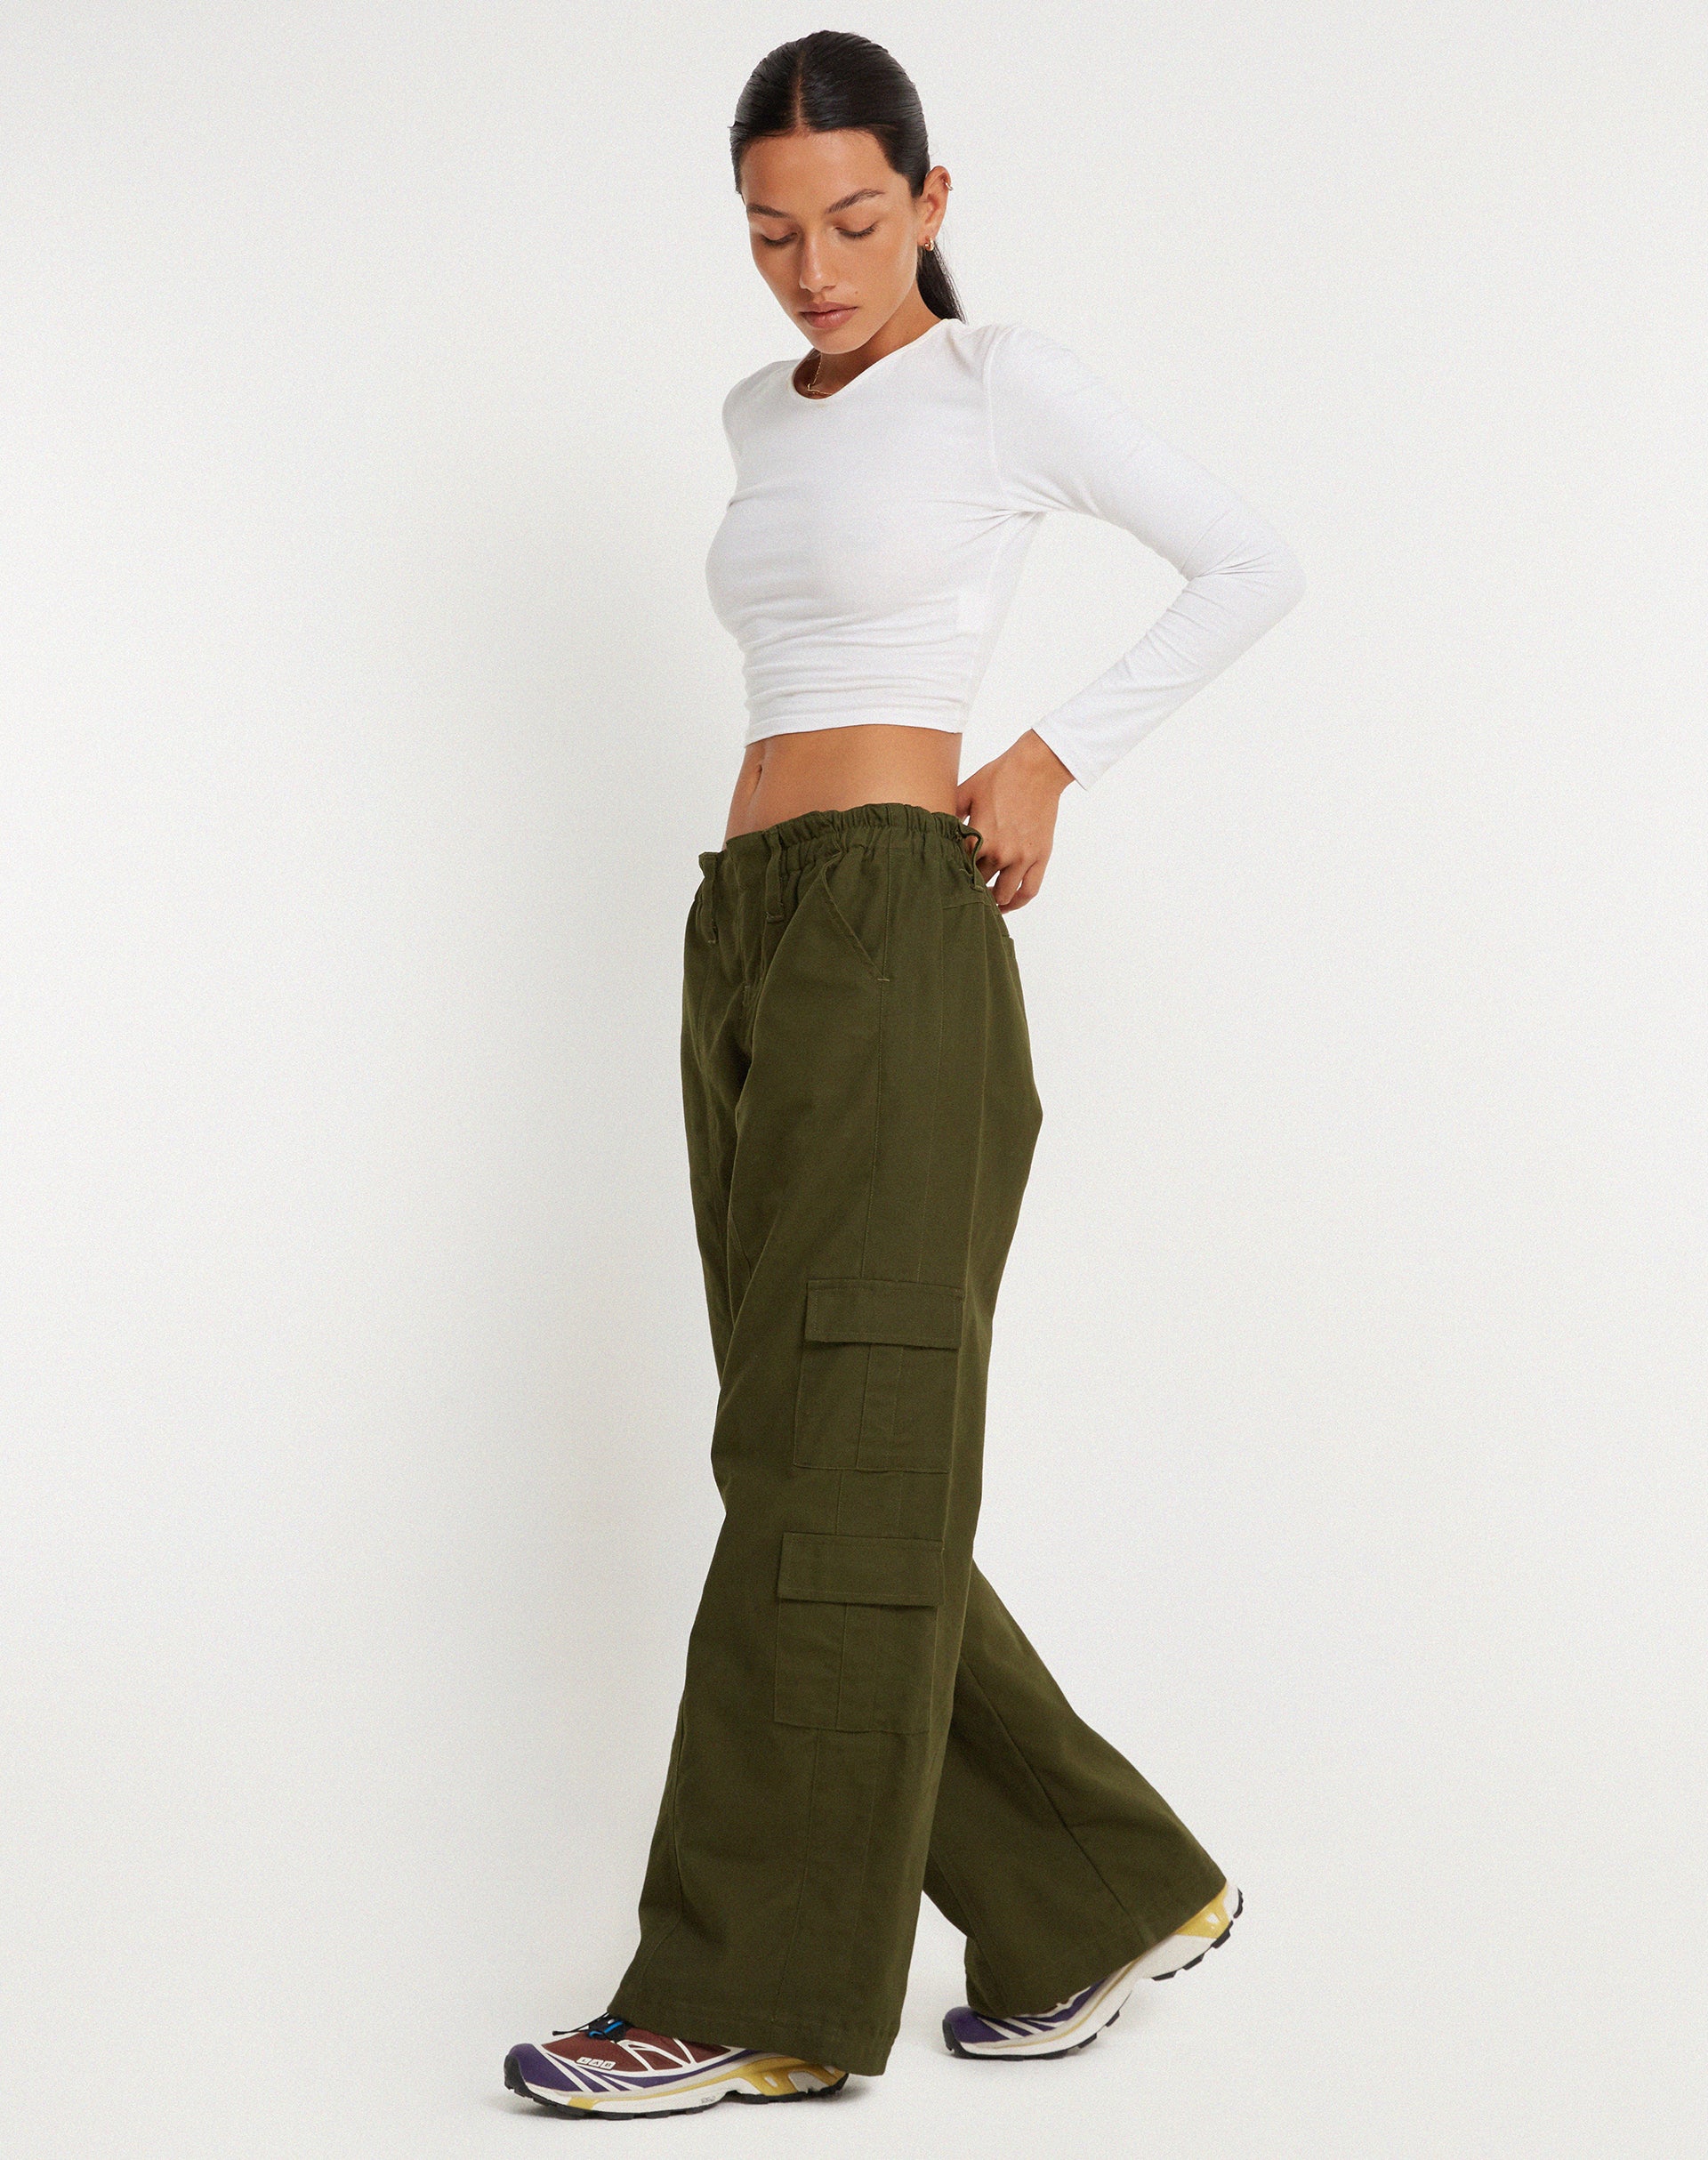 HALARA, Pants & Jumpsuits, Olive Green Super Baggy Cargo Pants